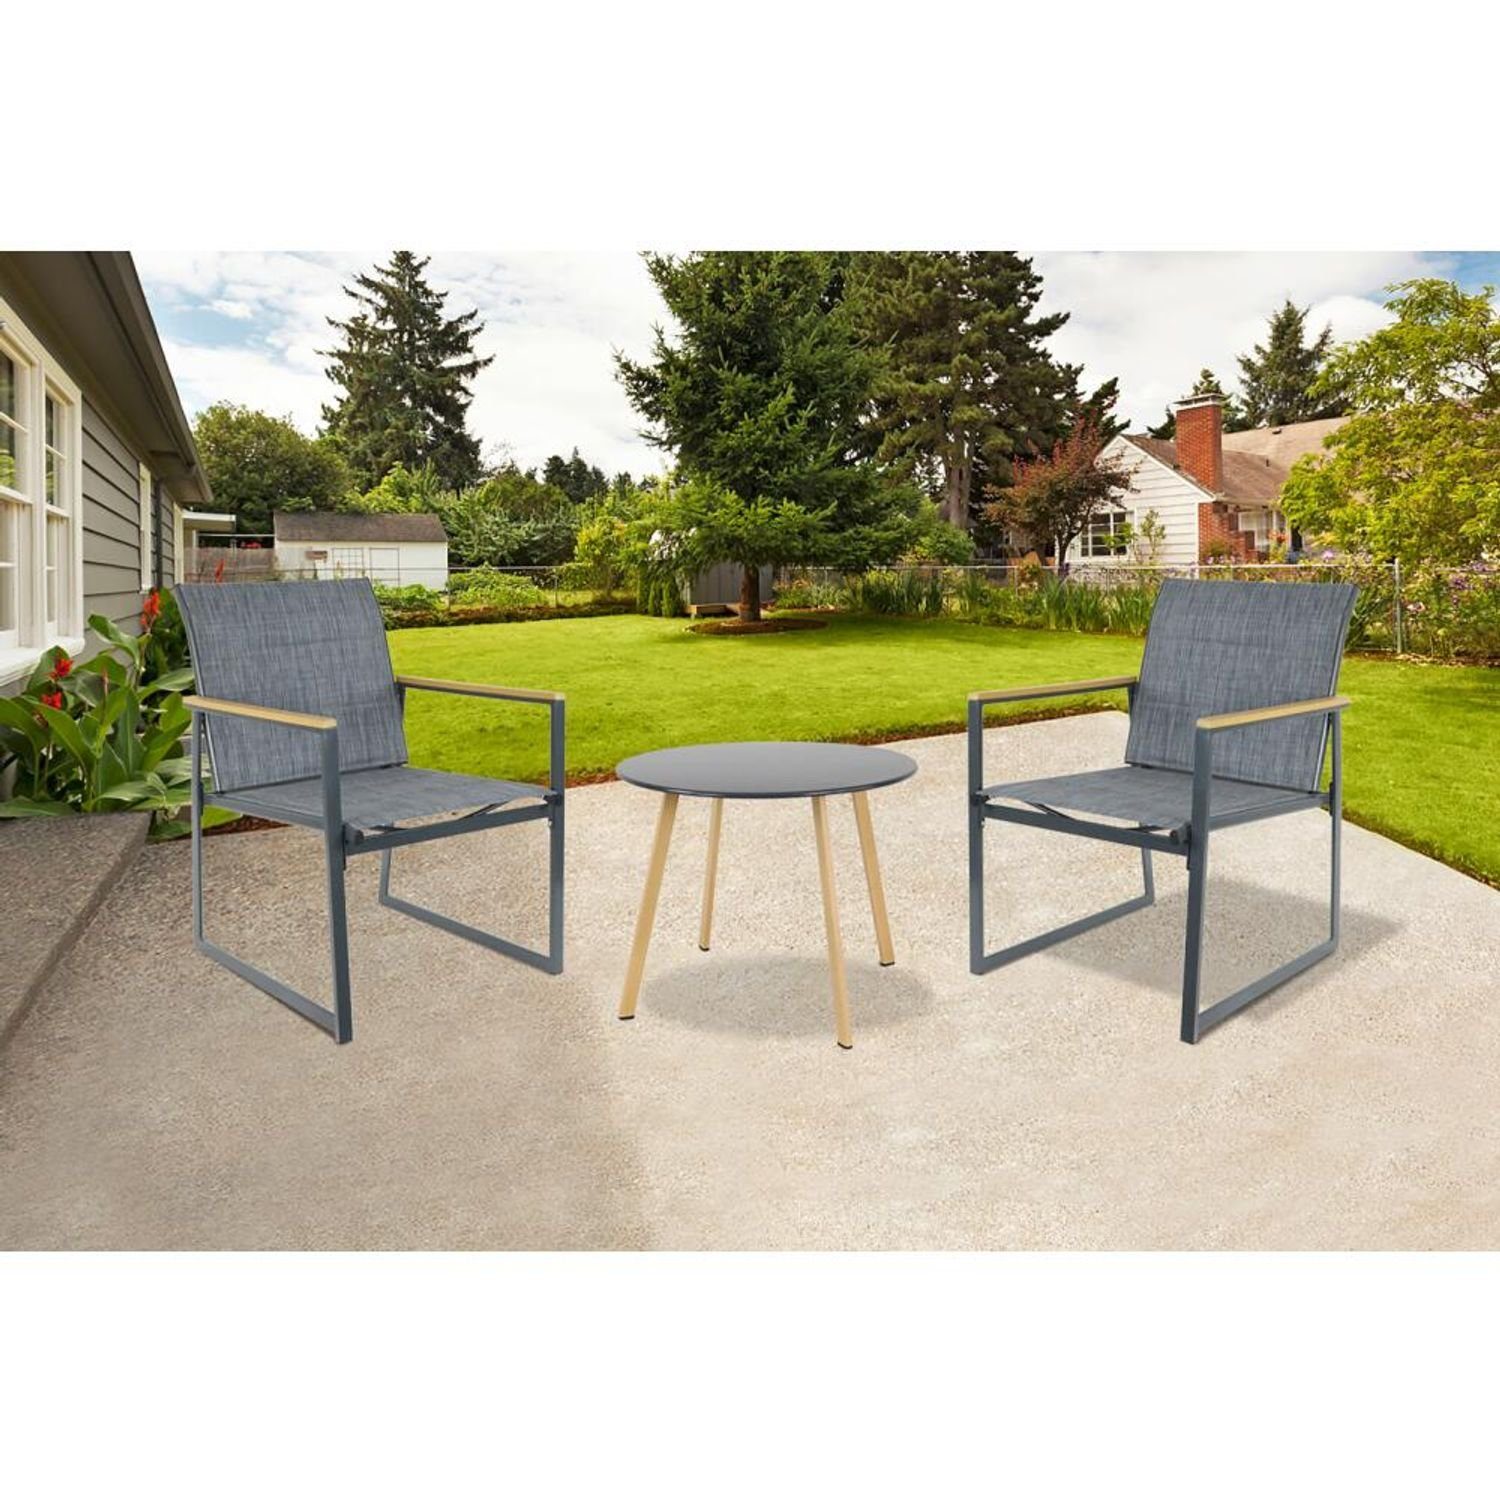 BURI Gartensessel Outdoor Sessel Stühle Sitzen Stuhl Garten Metall Hochlehner Terrassen